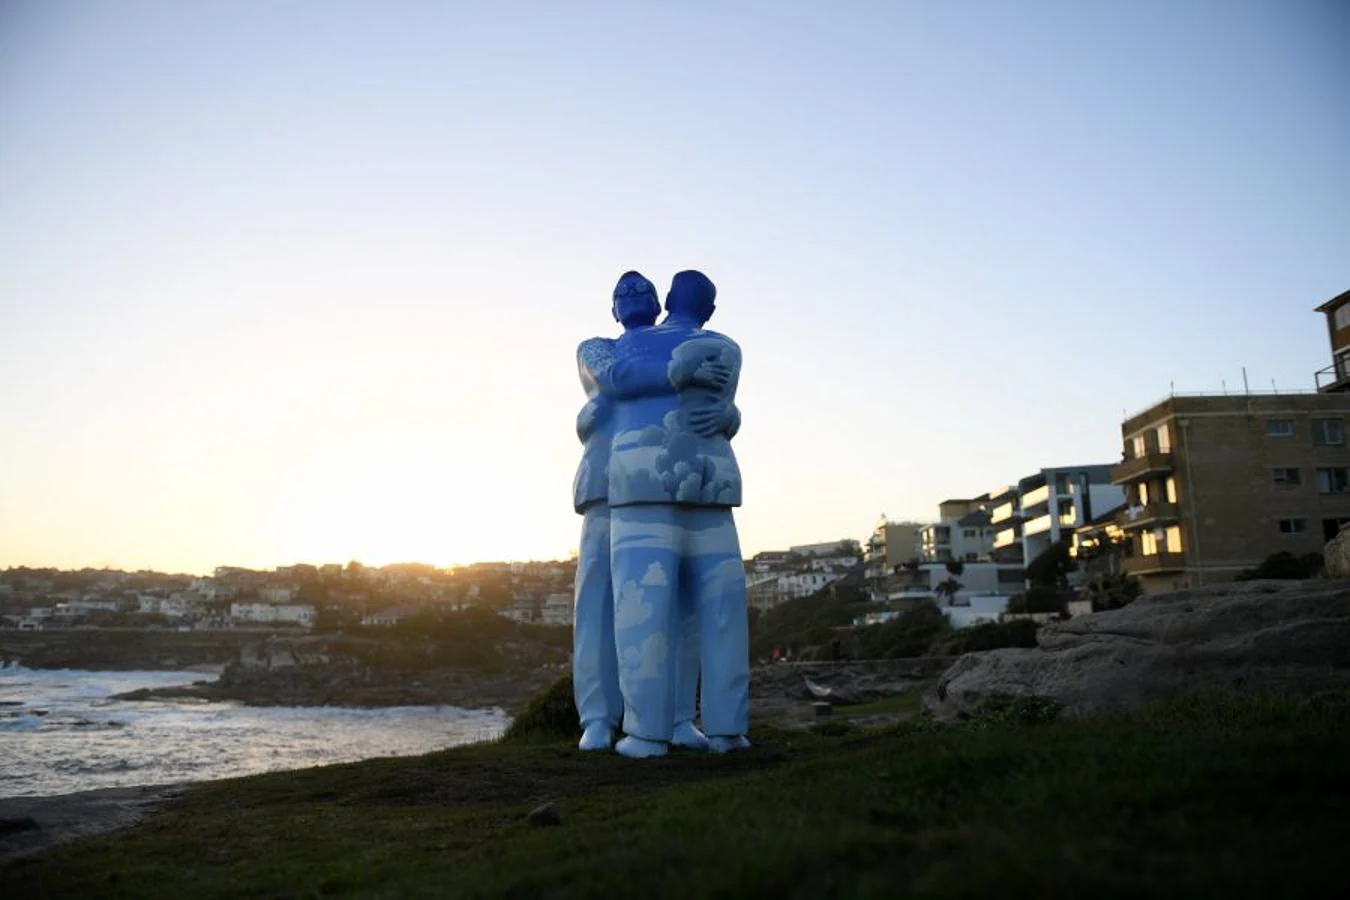 Artistas de todo el mundo exponen sus obras en 'Sculpture by de Sea', la mayor muestra de esculturas al aire libre a nivel mundial